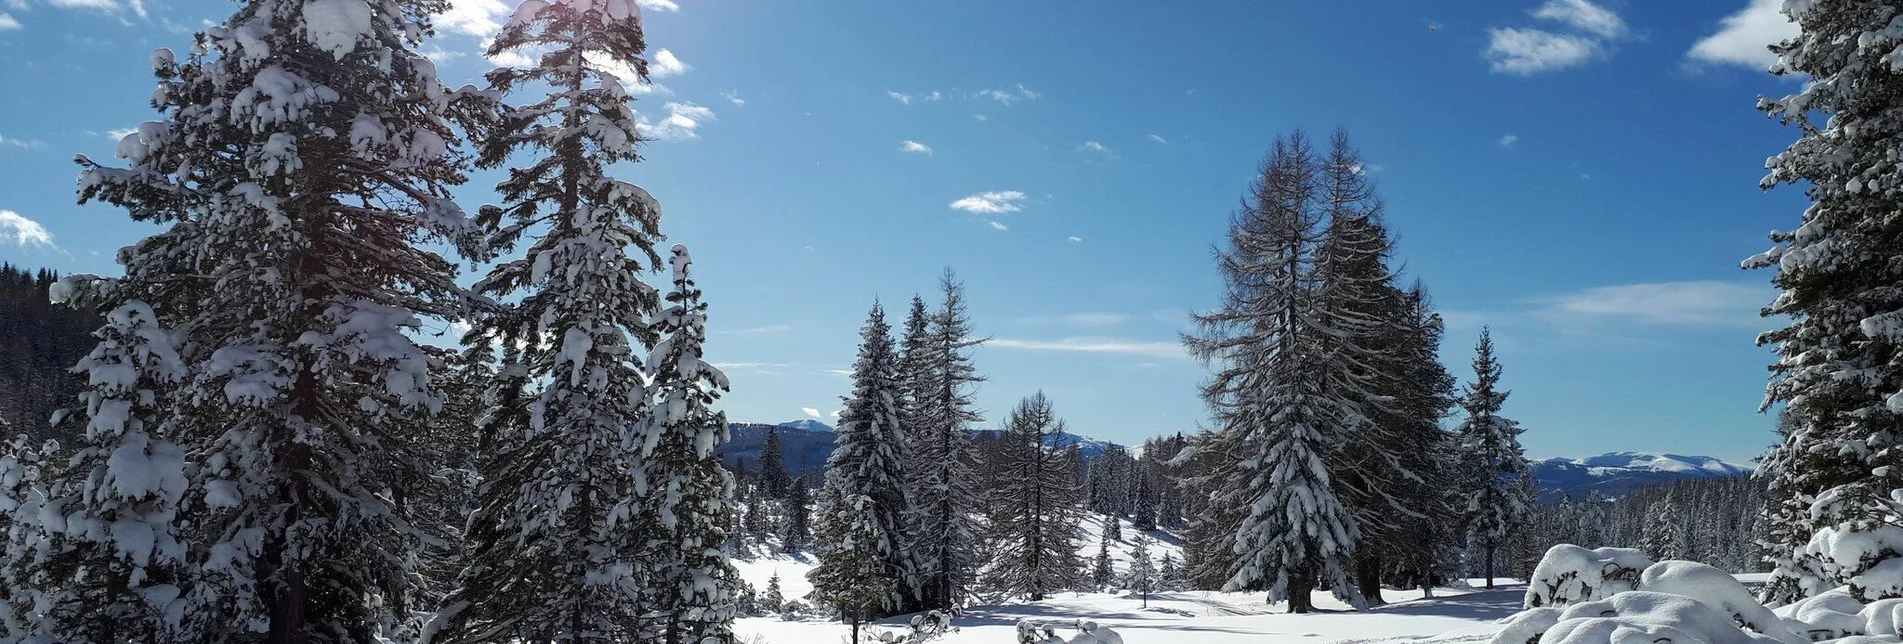 Snowshoe walking Tour to the Holzerhütte - Touren-Impression #1 | © Tourismusverband Region Murau